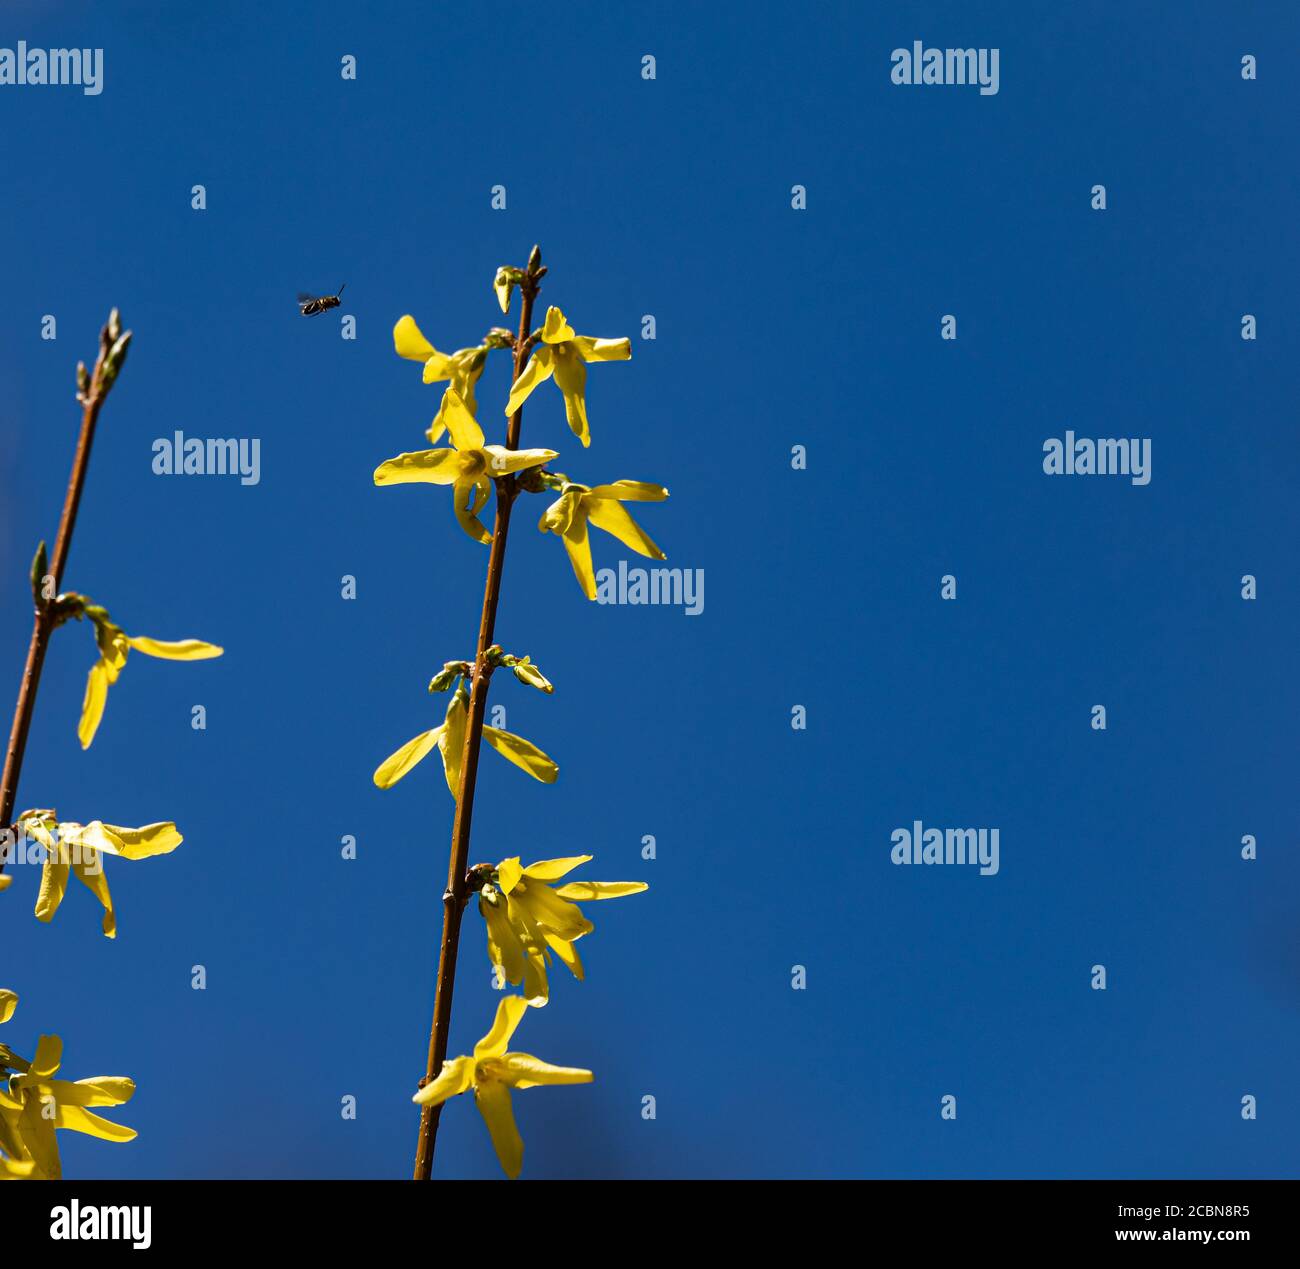 Nahaufnahme einer Biene, die an den gelben Blumen vorbeifliegt Ende eines Zweiges mit blauem Himmel Hintergrund Stockfoto